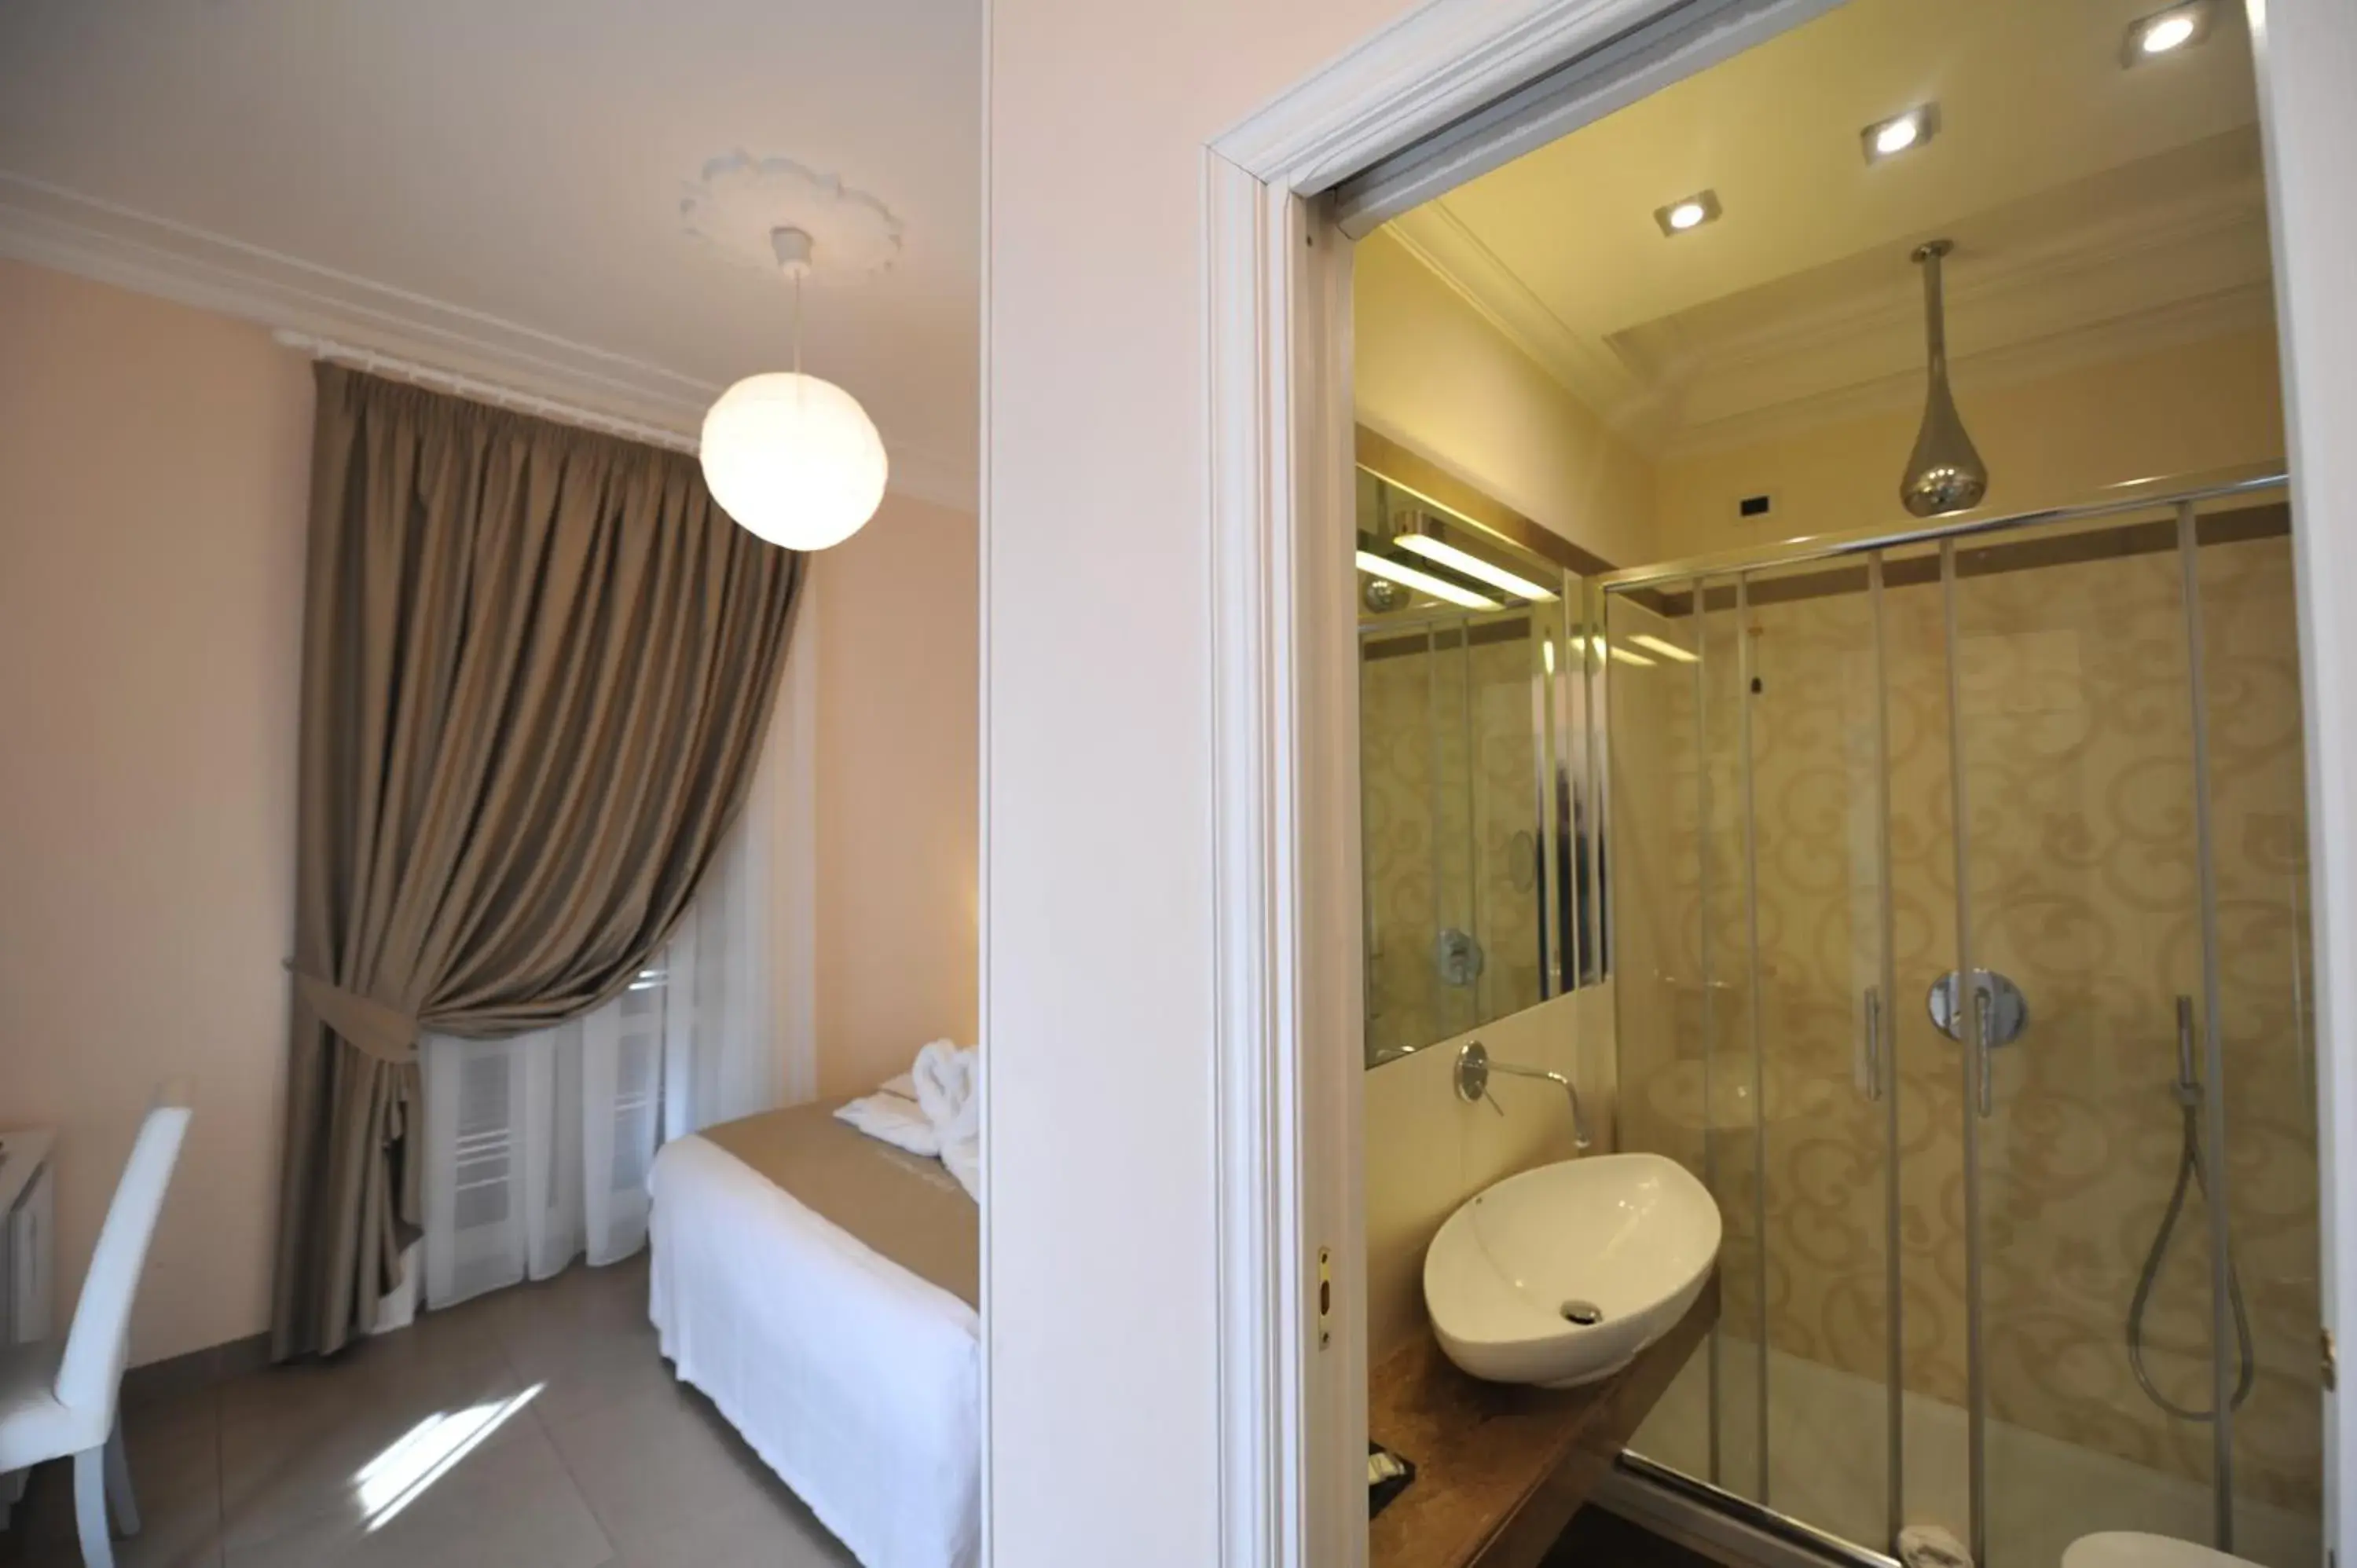 Photo of the whole room, Bathroom in Villa Zaccardi